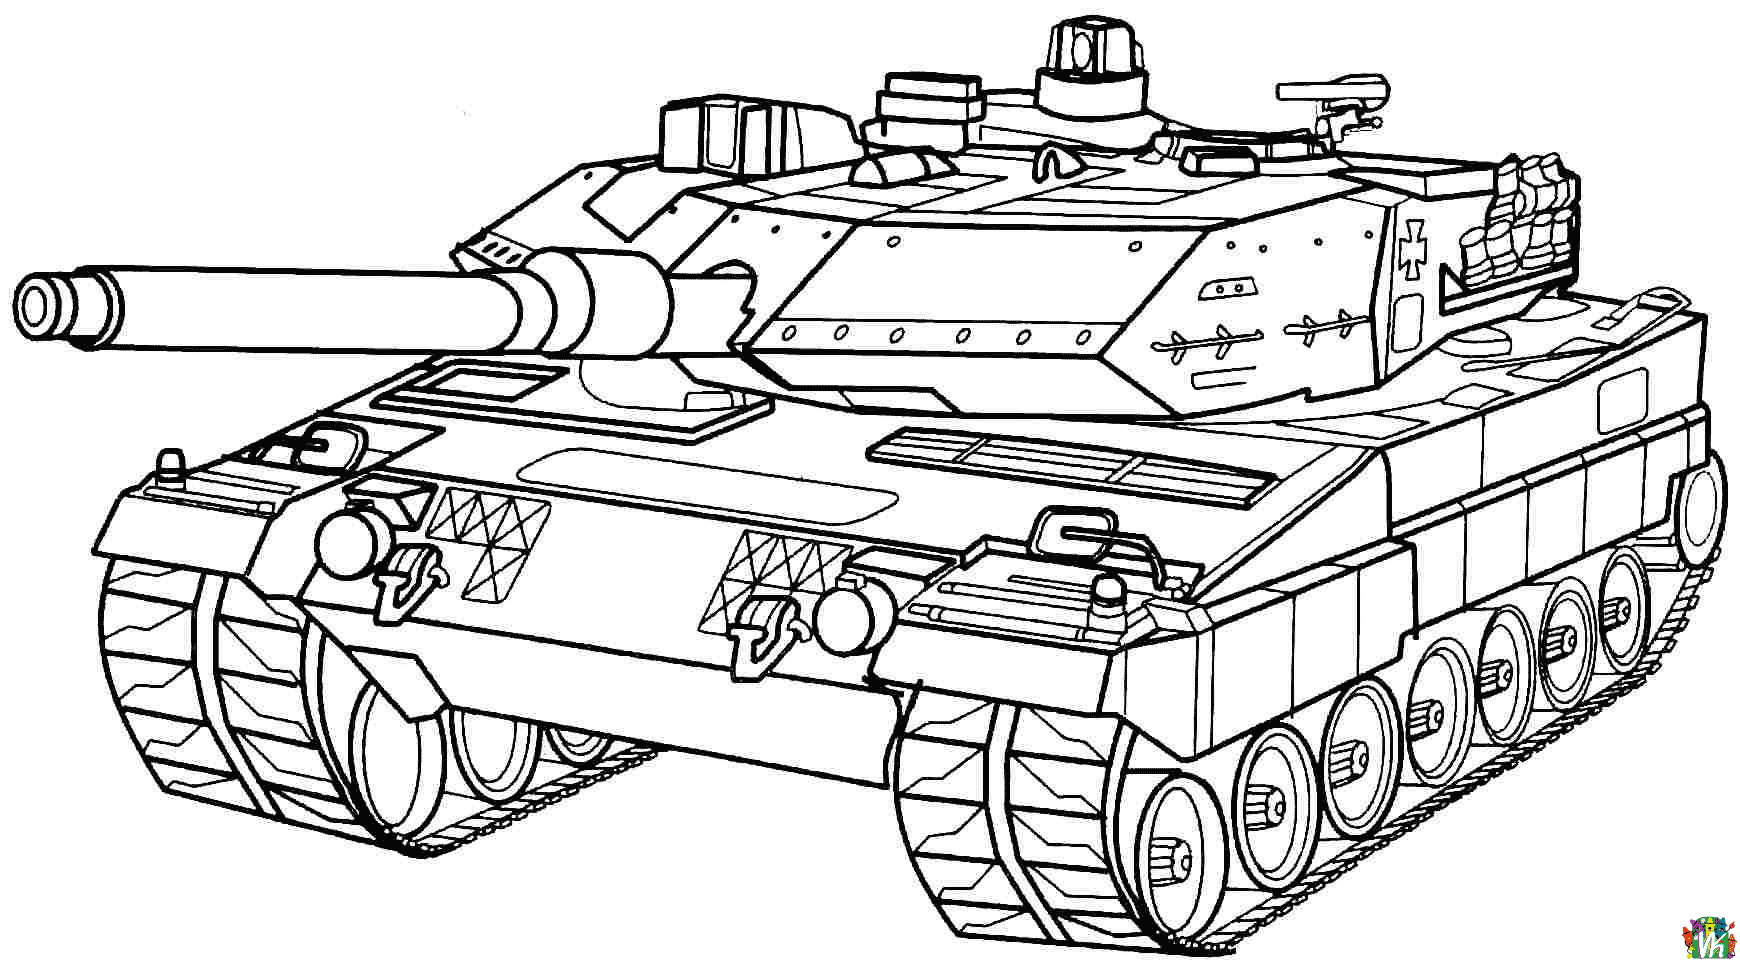 panssarivaunu-varityskuvat (12)